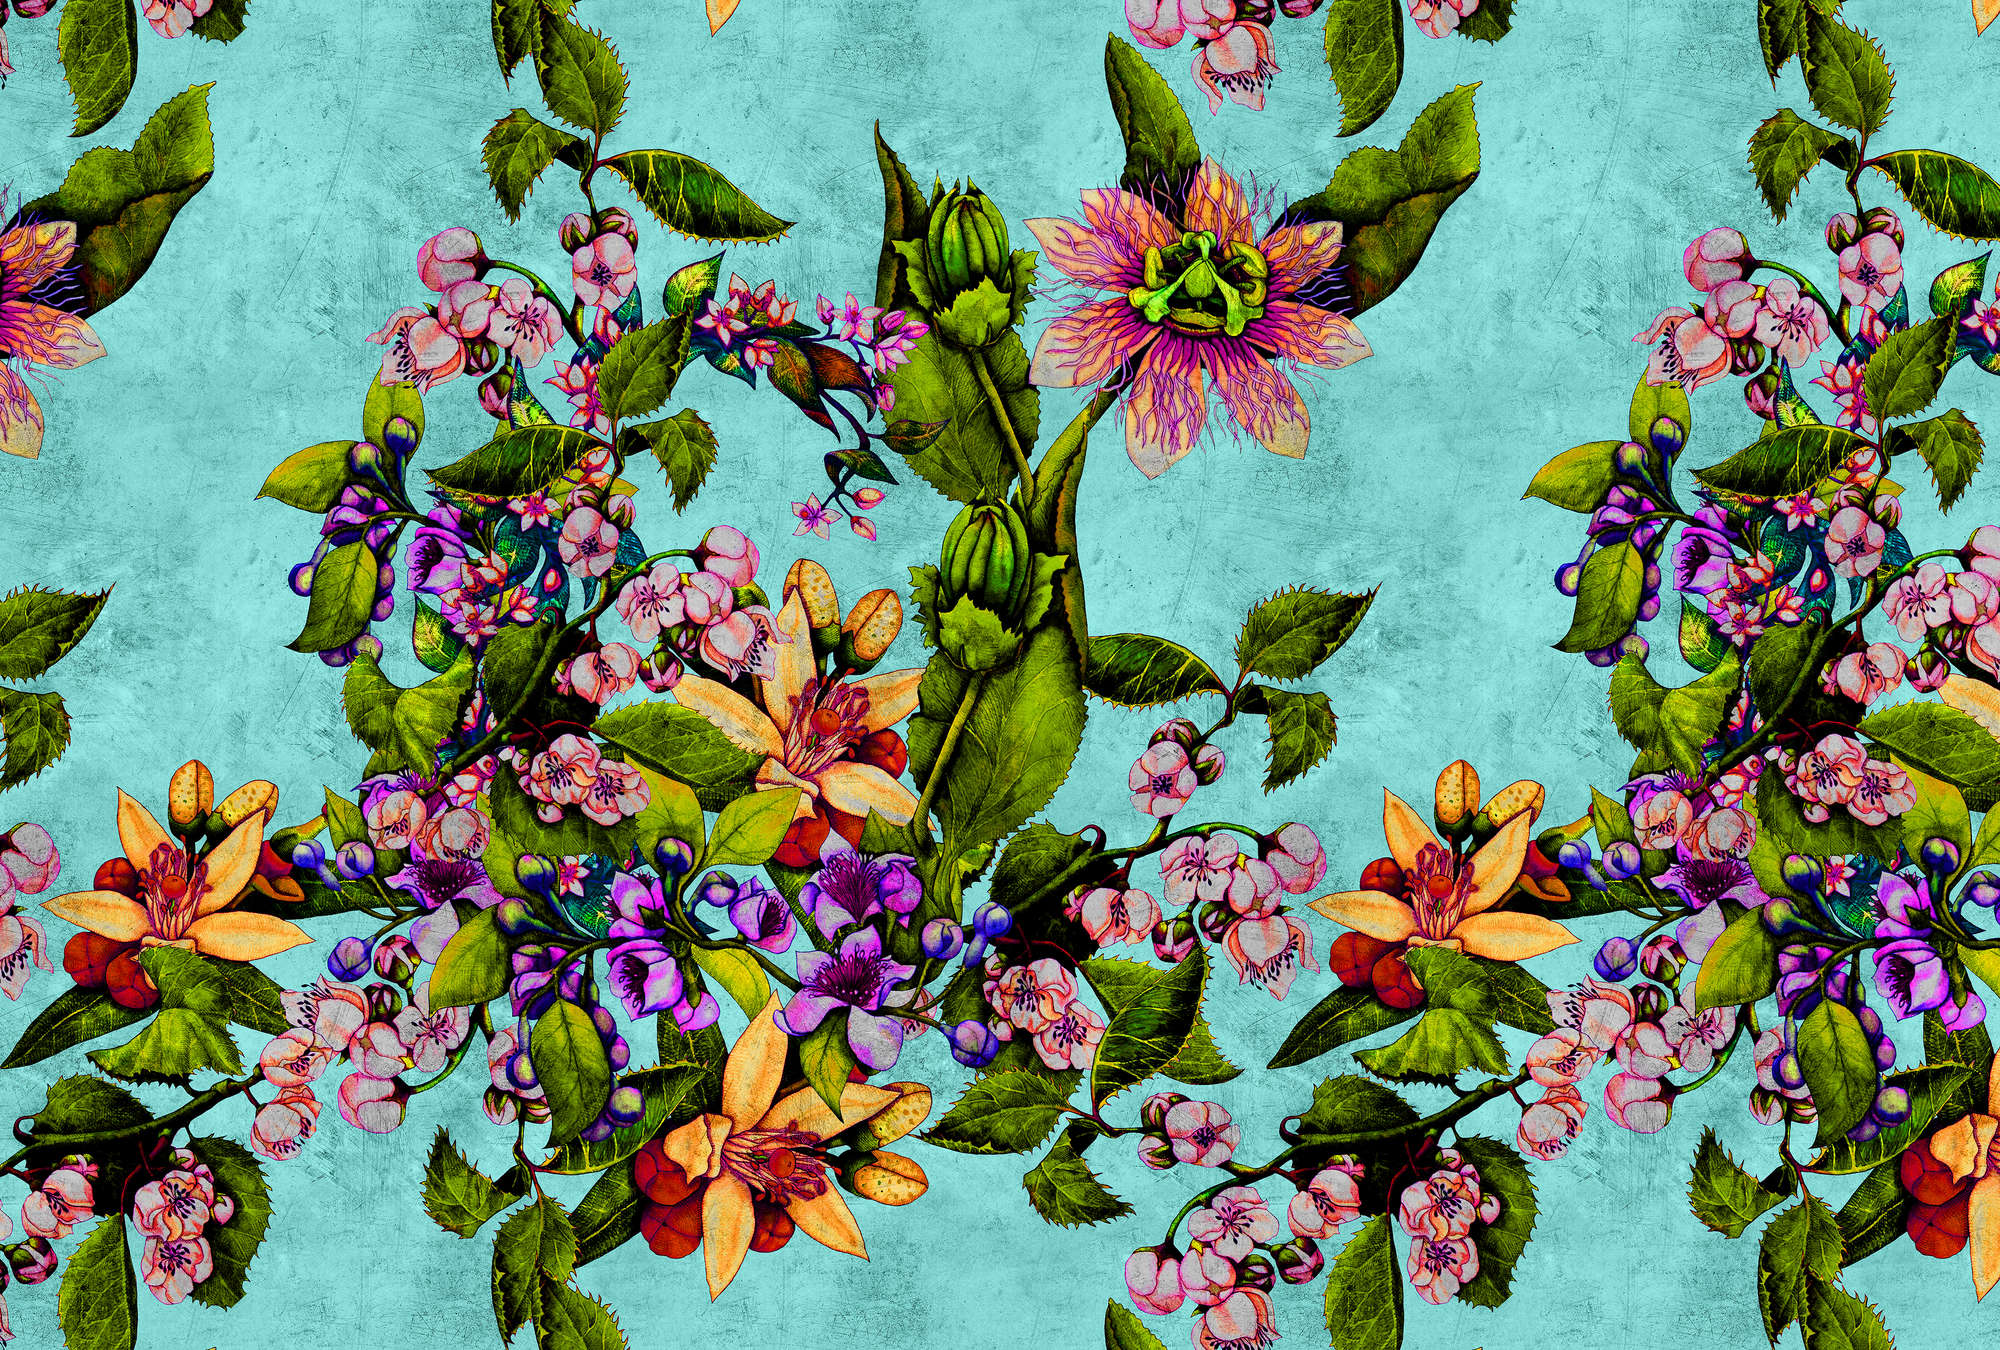             Tropical Passion 1 - Papier peint tropical avec motif floral à texture rayée - vert, turquoise | Intissé lisse mat
        